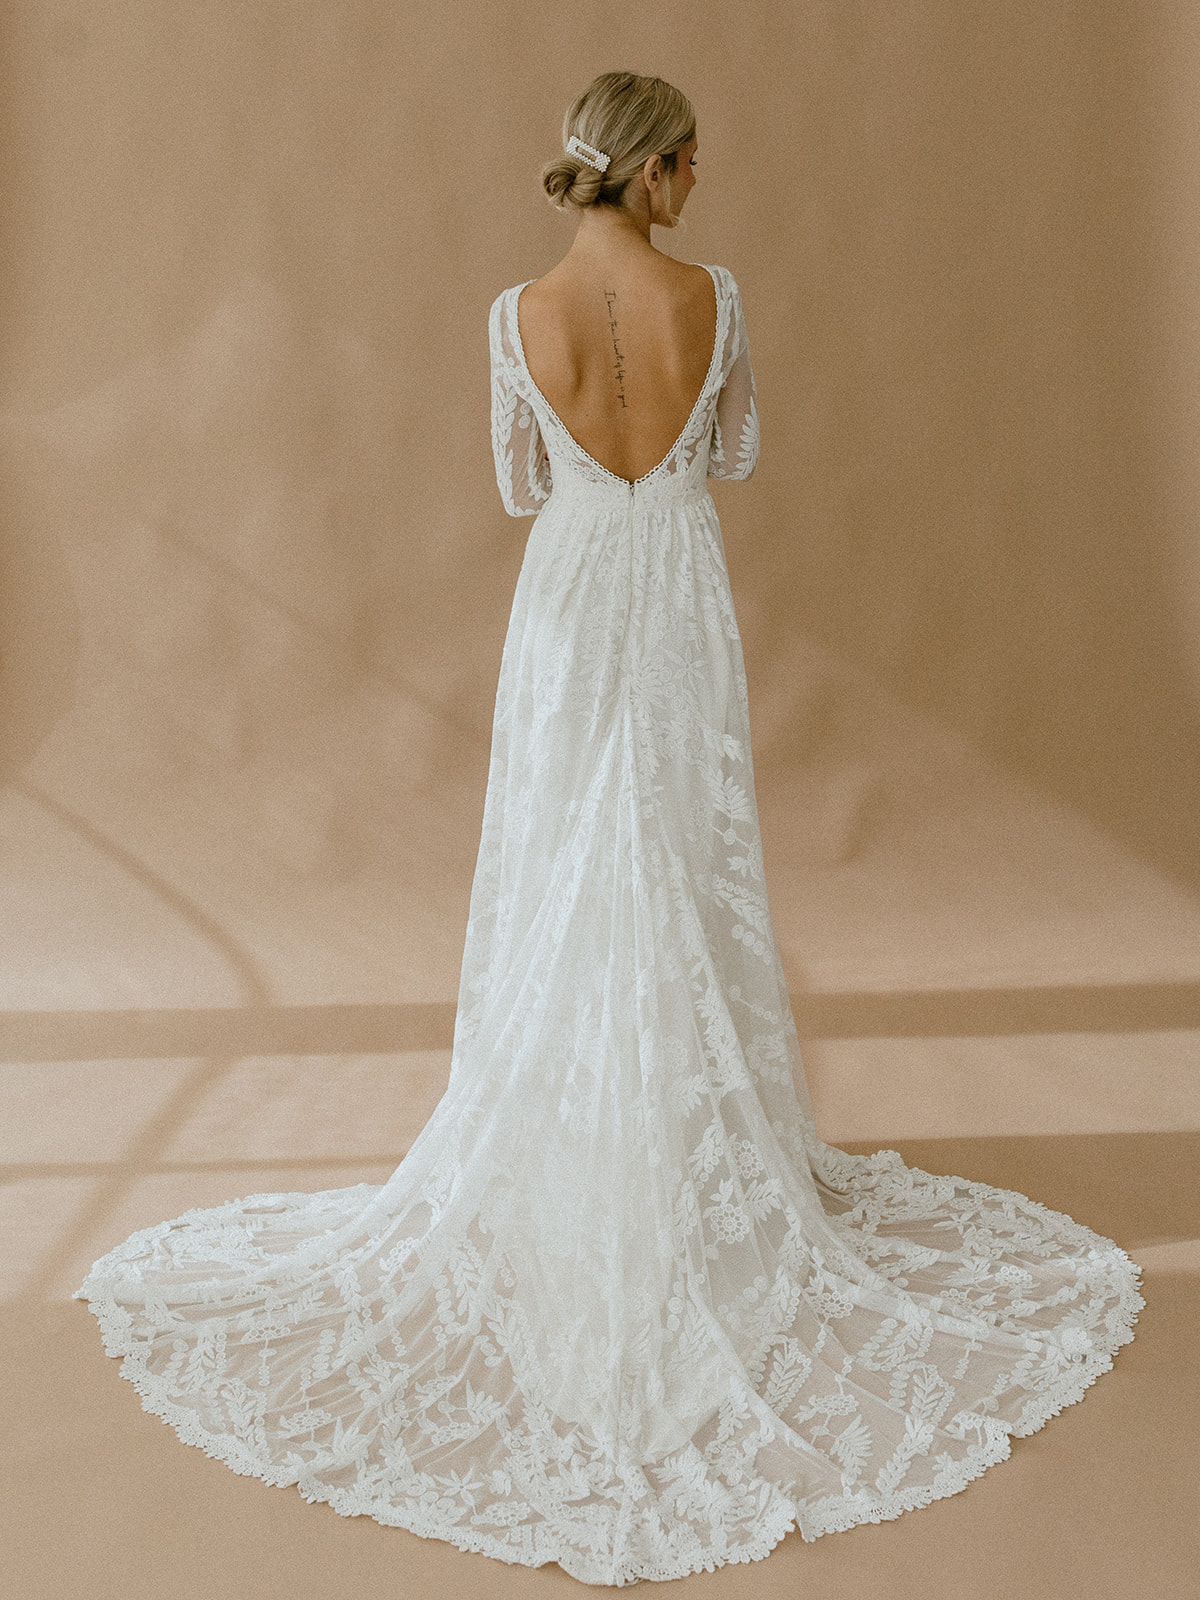 https://www.dreamersandlovers.com/wp-content/uploads/2019/07/Simone-open-back-flowy-lace-wedding-dress.jpg